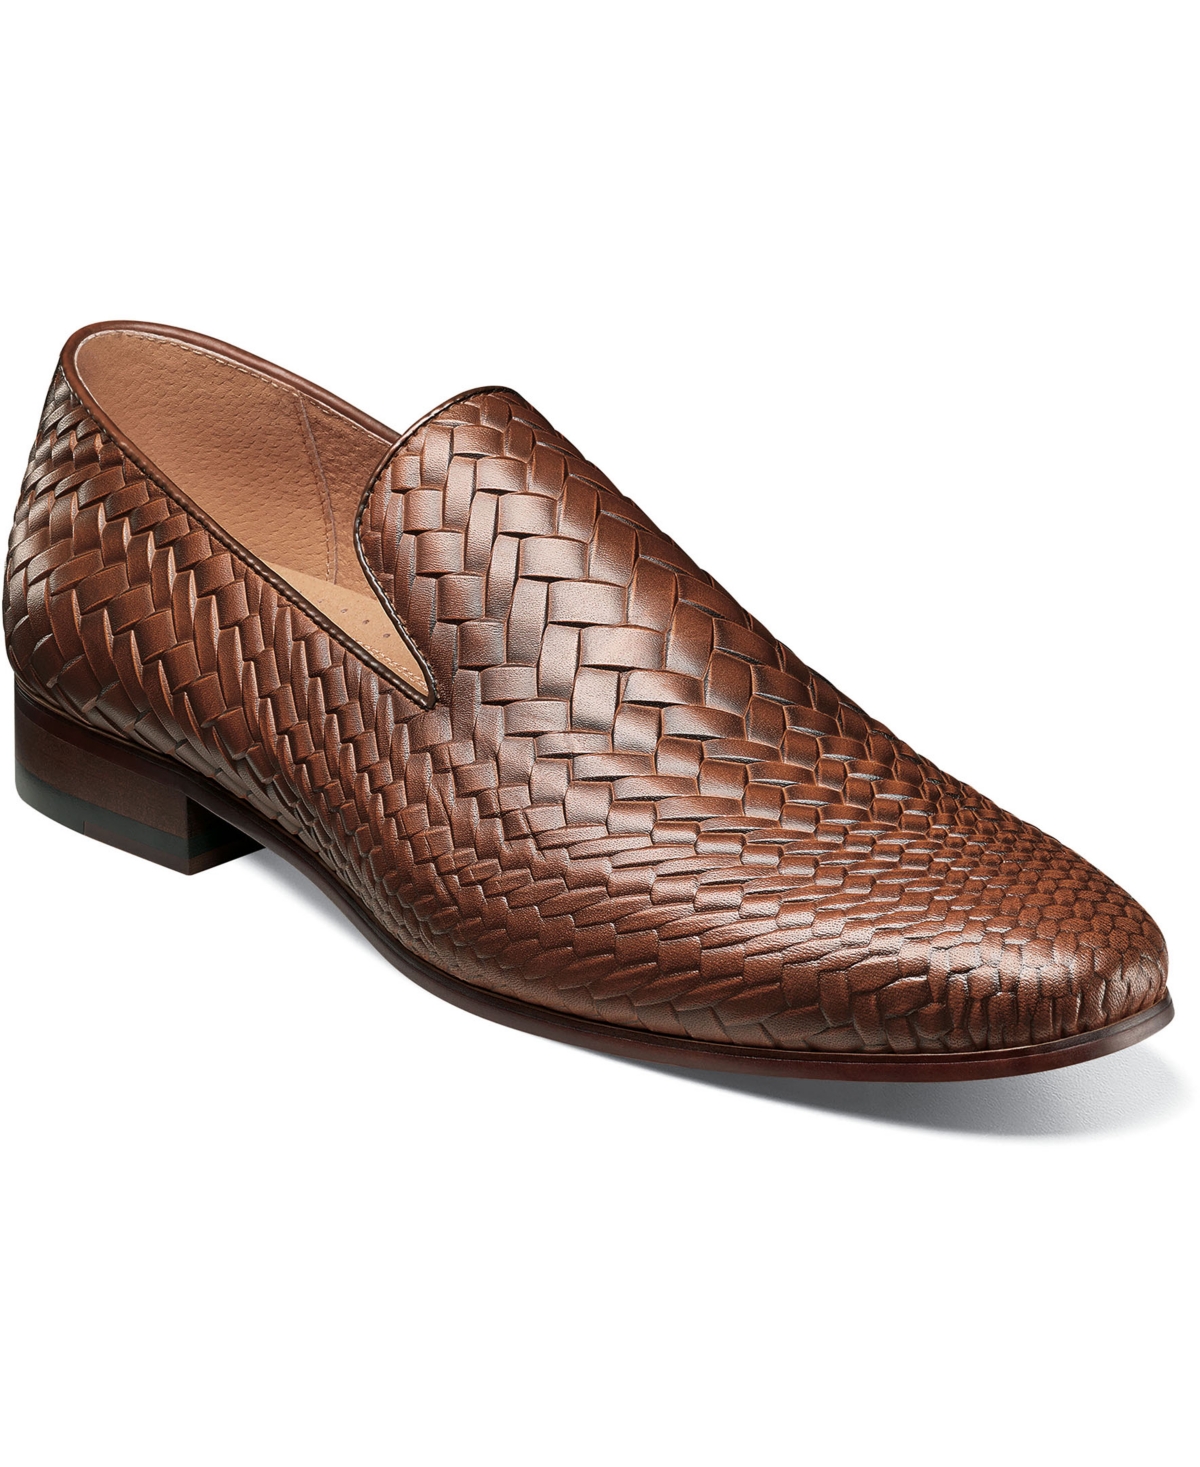 Men's Wilton Plain Toe Slip-On Dress Shoes - Tan